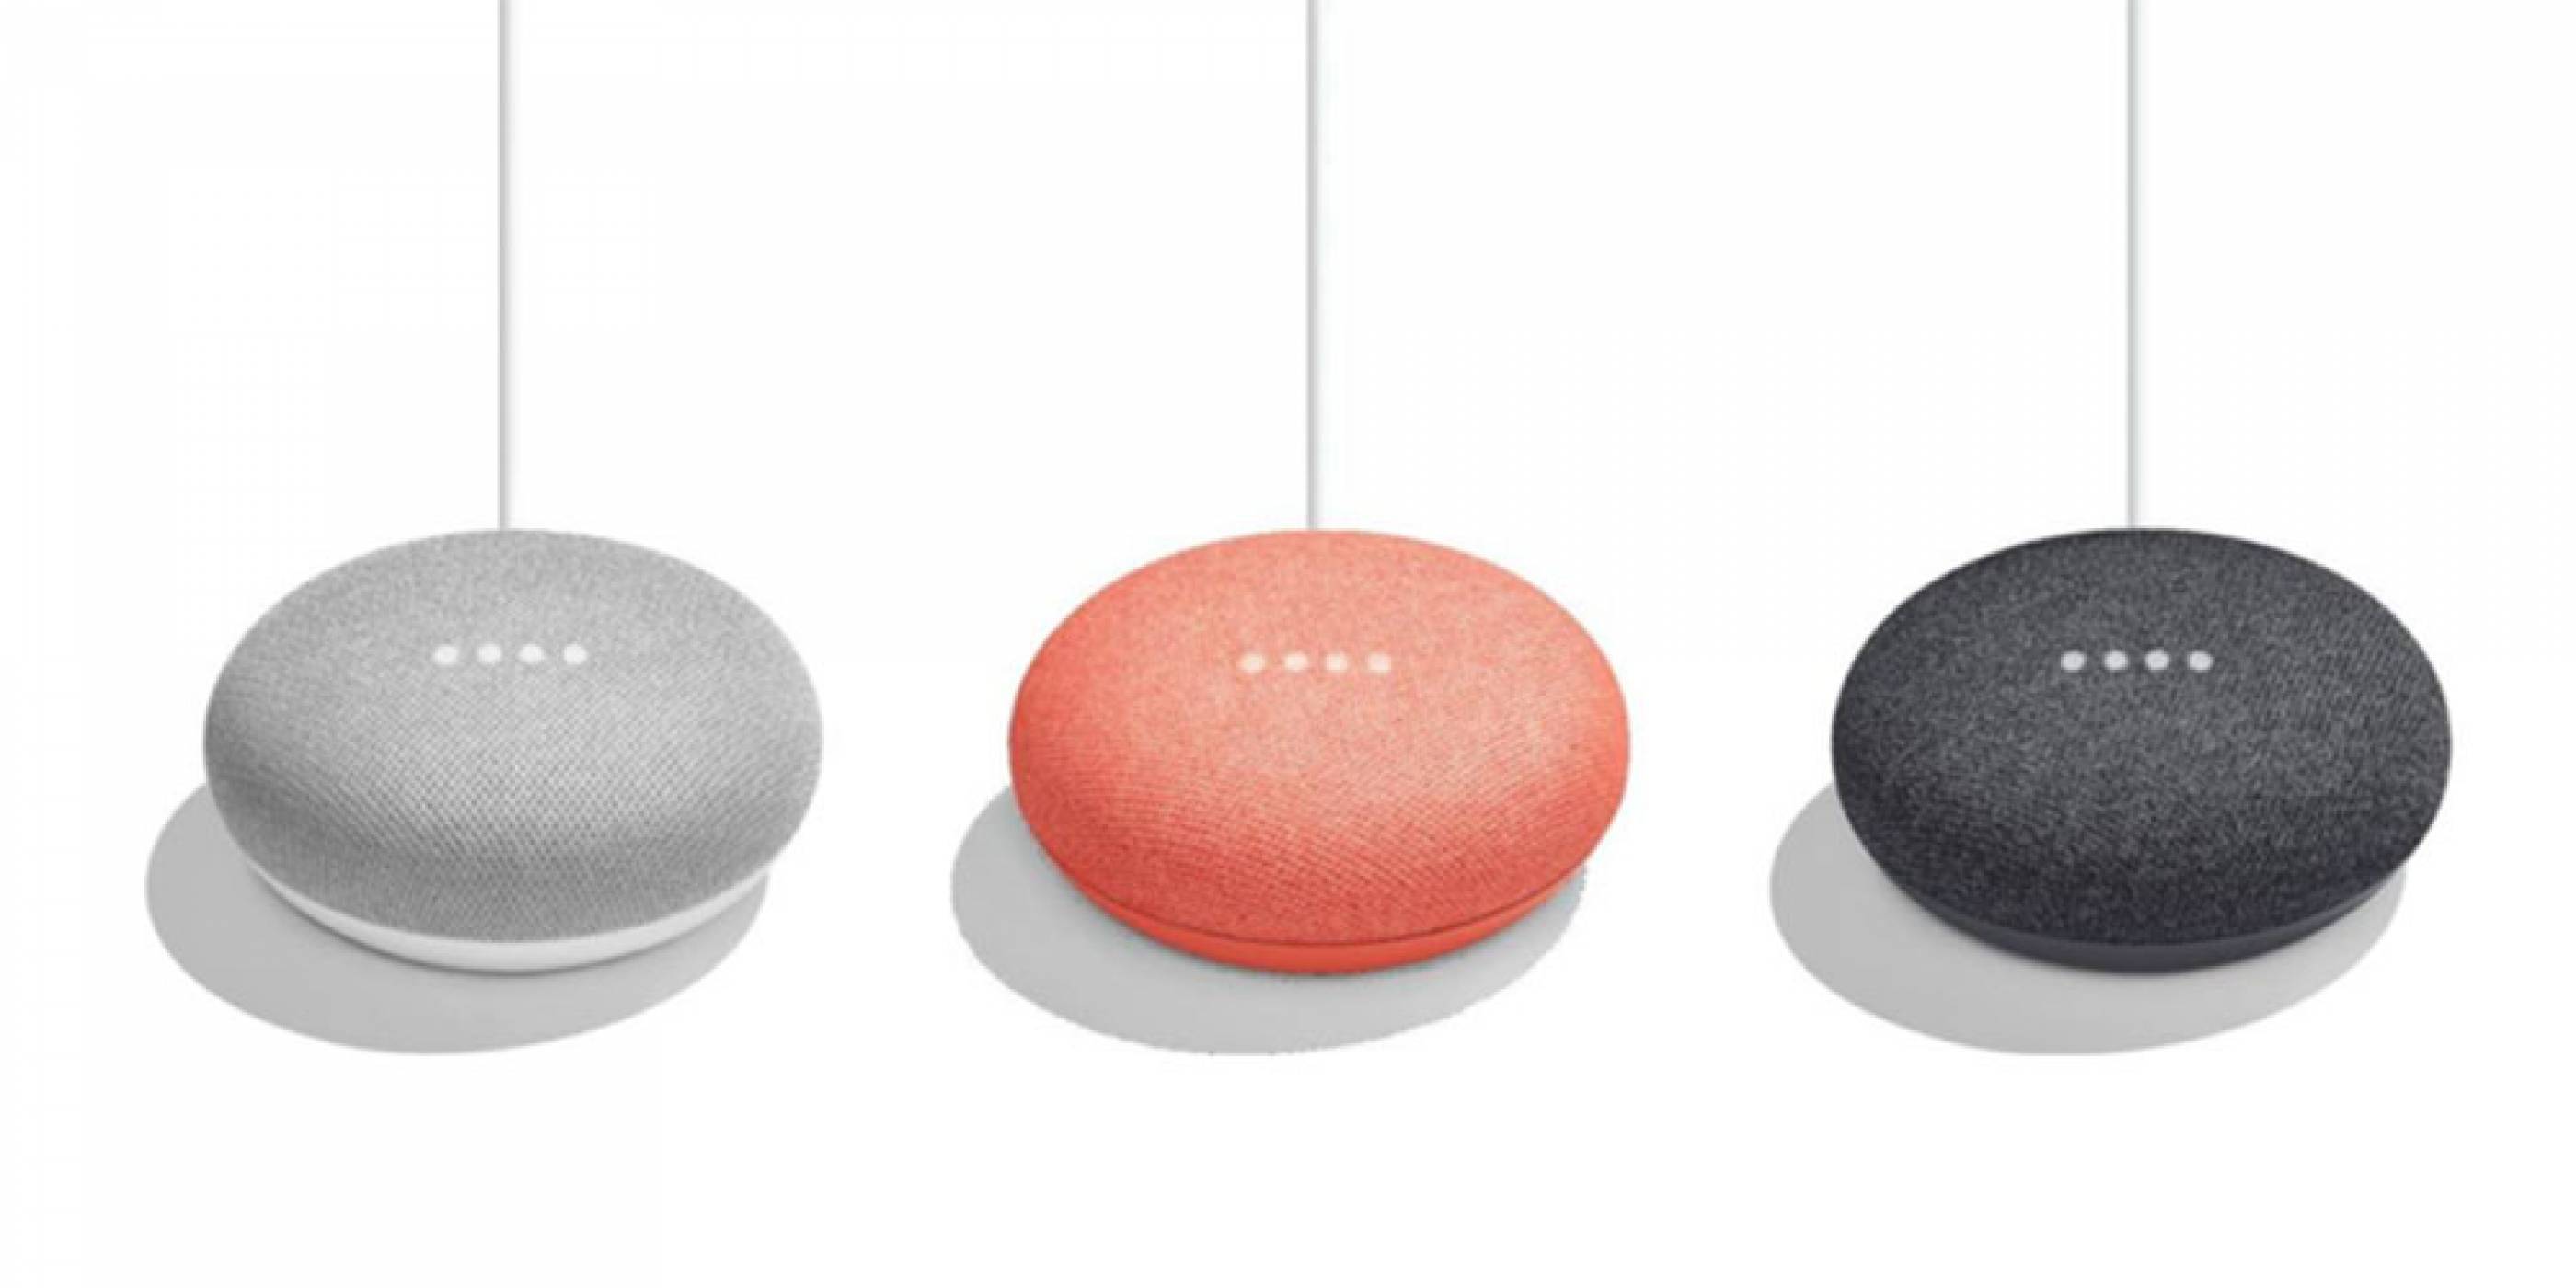 Google се кани да представи по-малък умен говорител, наречен Home Mini